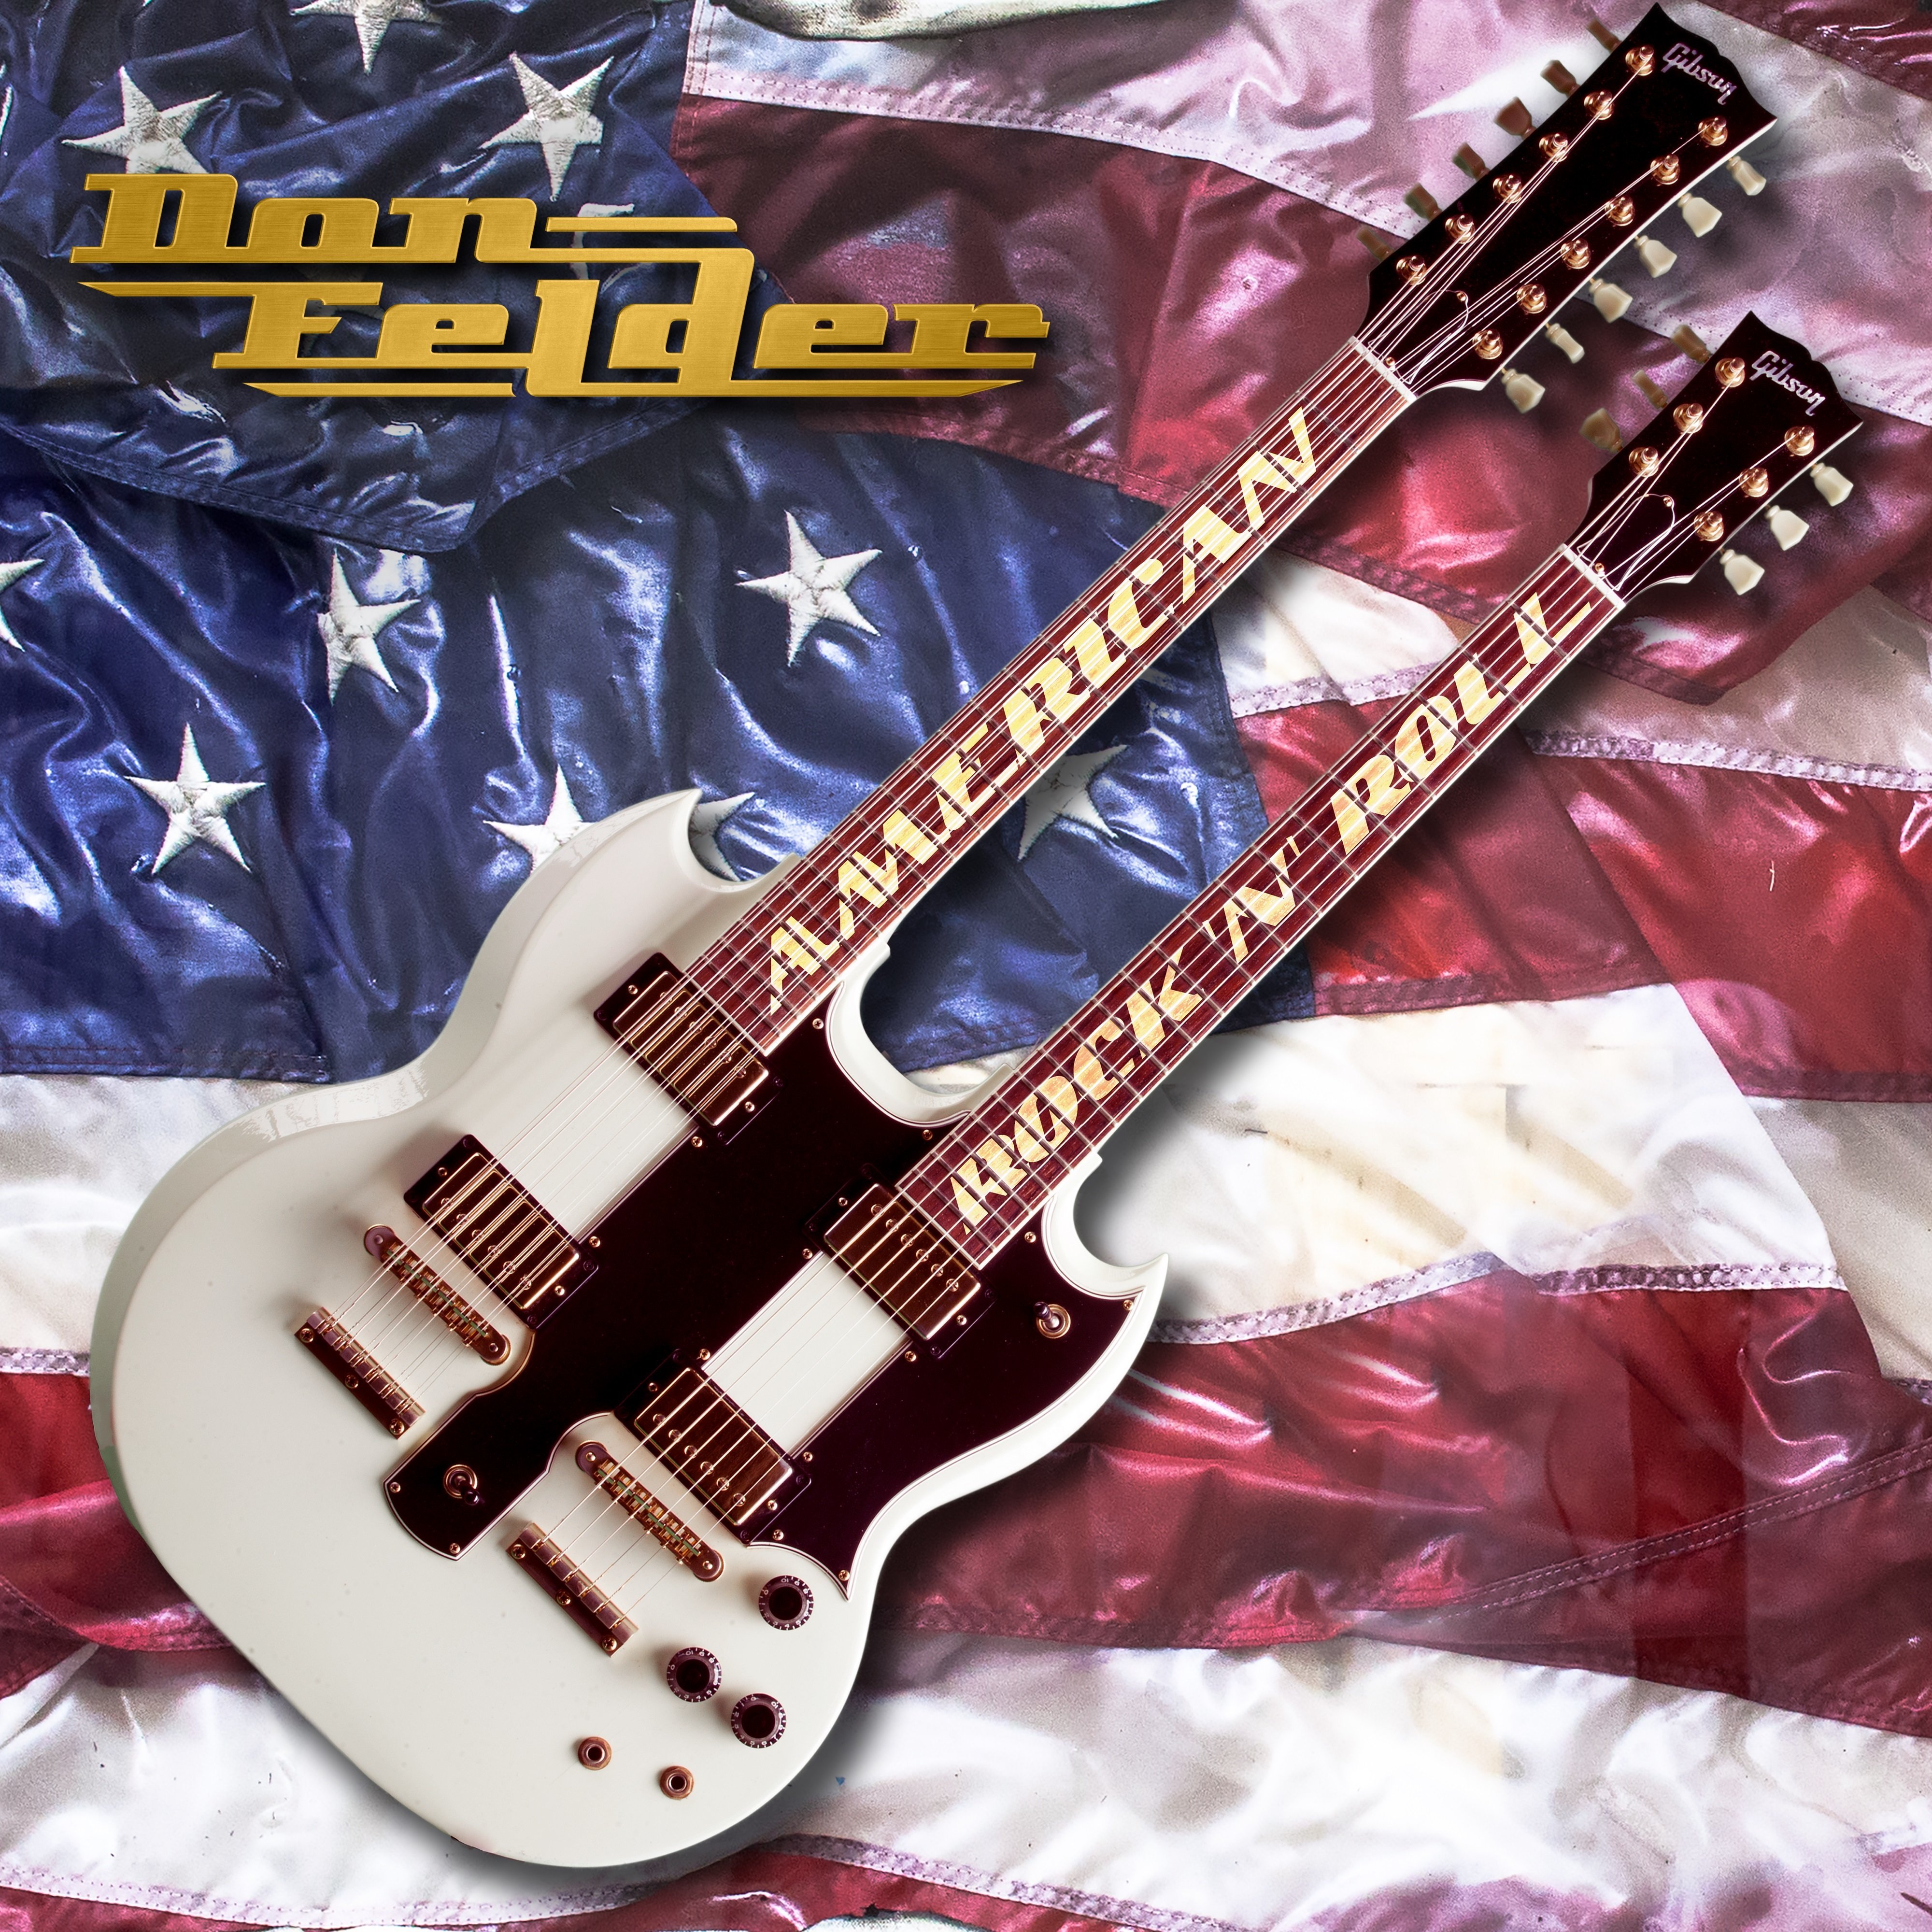 Don Felder (The Eagles) – Esce il nuovo album “American Rock ’N’ Roll”